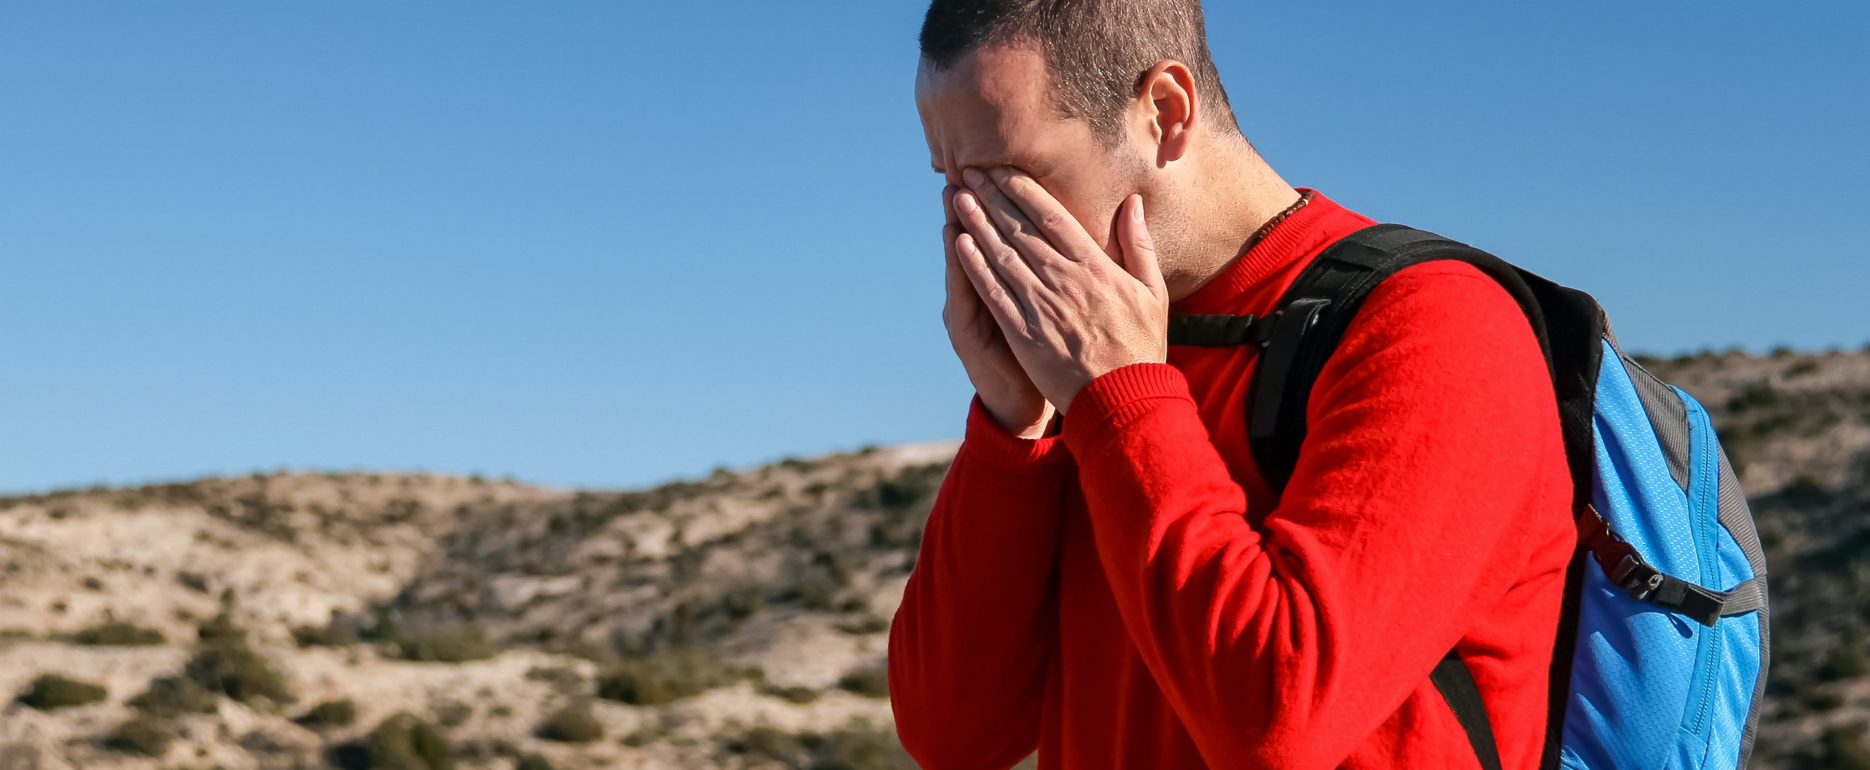 Man hiking in a red shirt having a headache